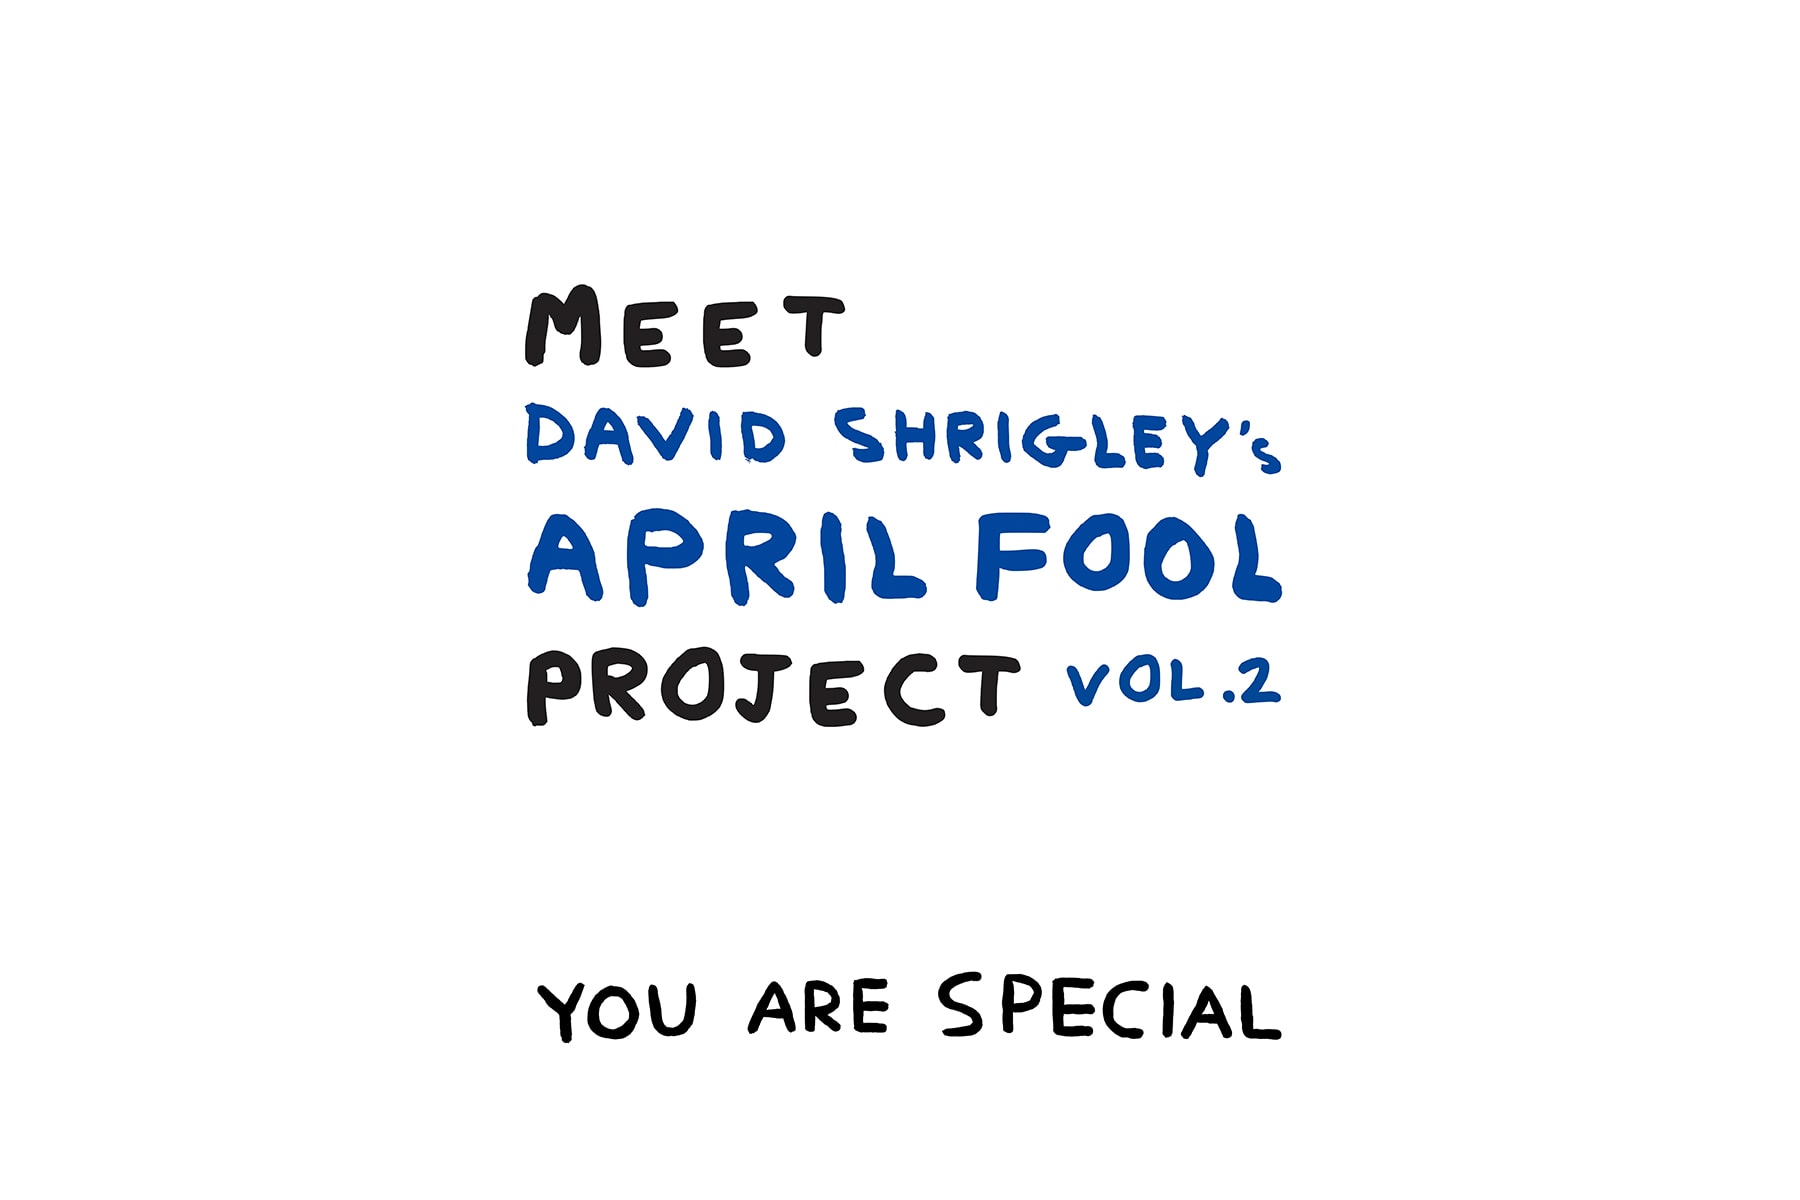 AllRightsReserved 再次攜手 David Shrigley 迎來全新《MEET David Shrigley’s April Fool PROJECT VOL.2》